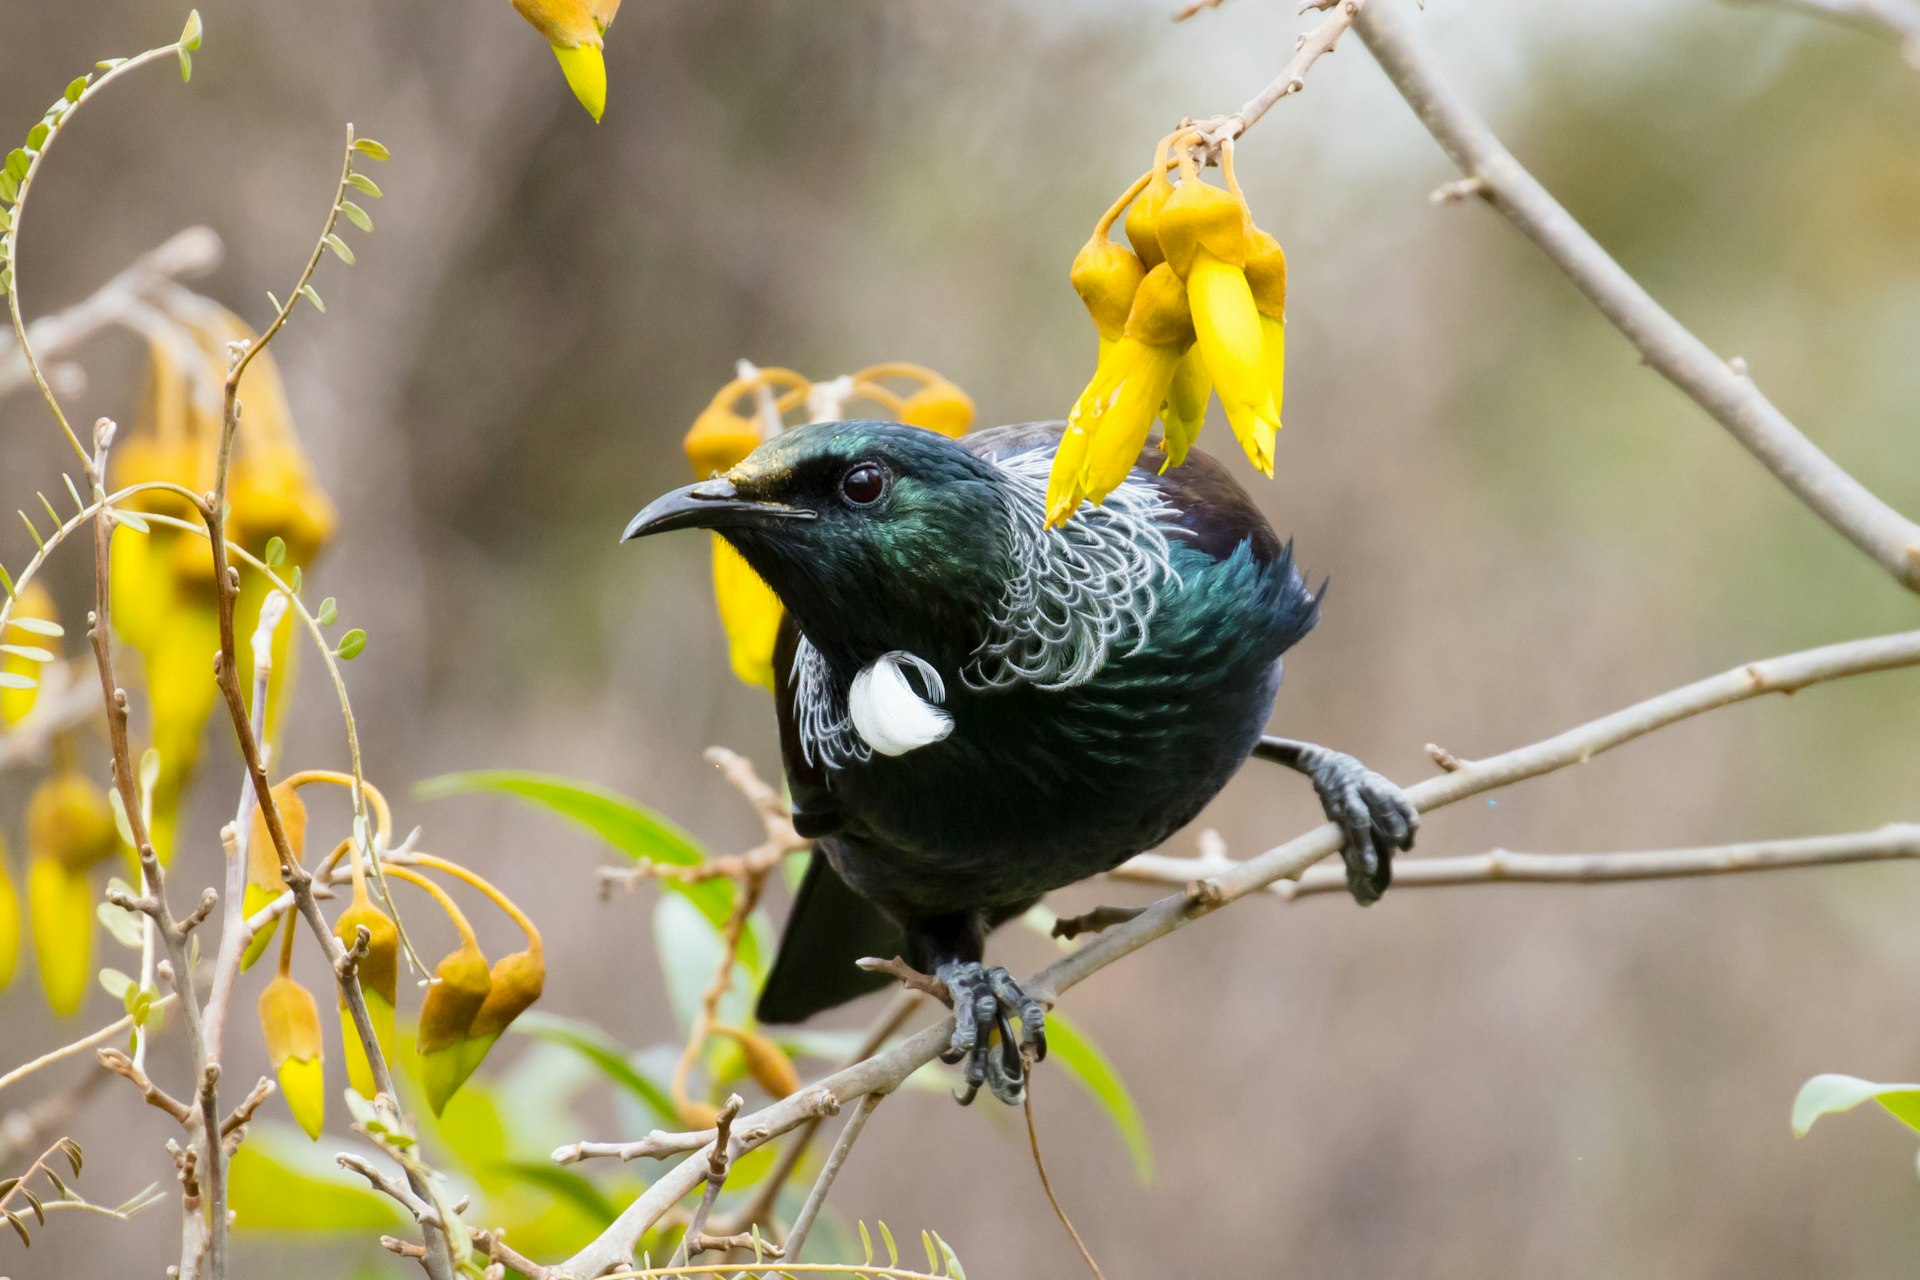 An iridescent tui bird (Prosthemadera novaeseelandiae) feeding on Kowhai nectar near Taupo.